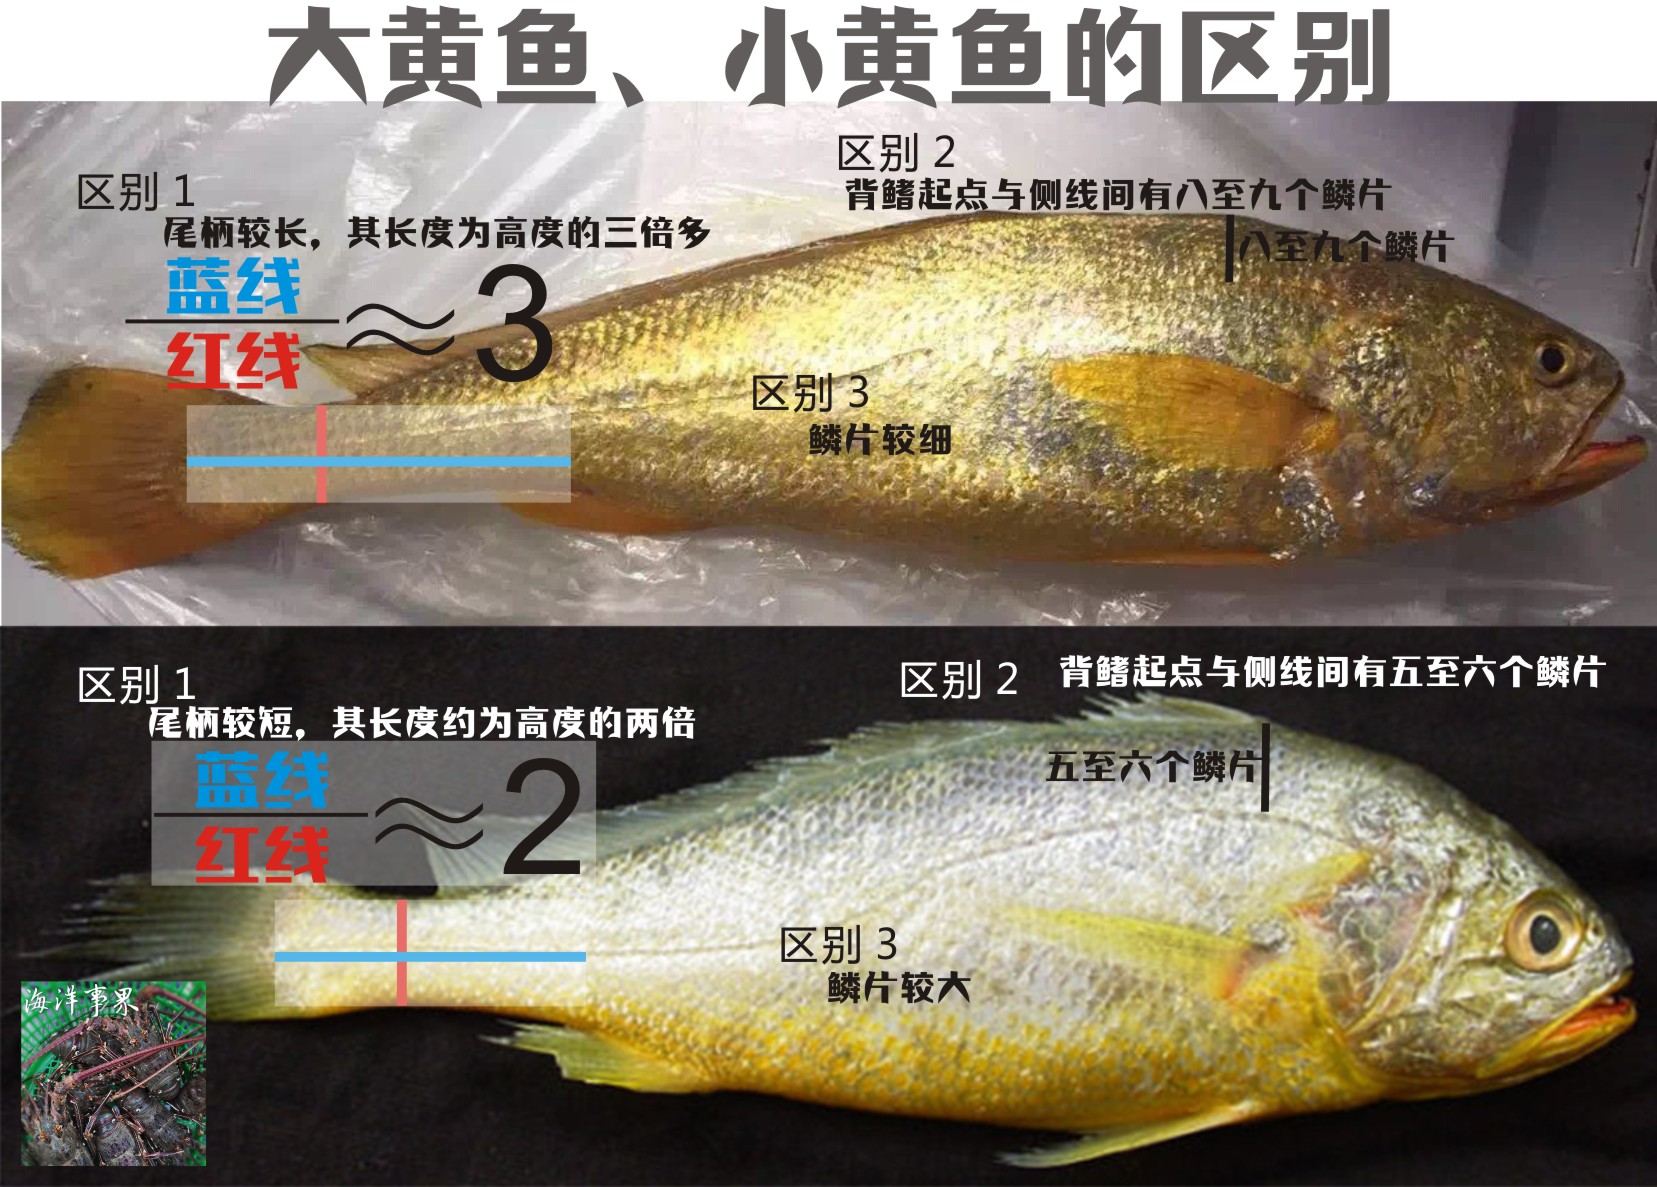 大黄鱼、小黄鱼、梅童鱼三种易混淆鱼类认知，以及如何区分